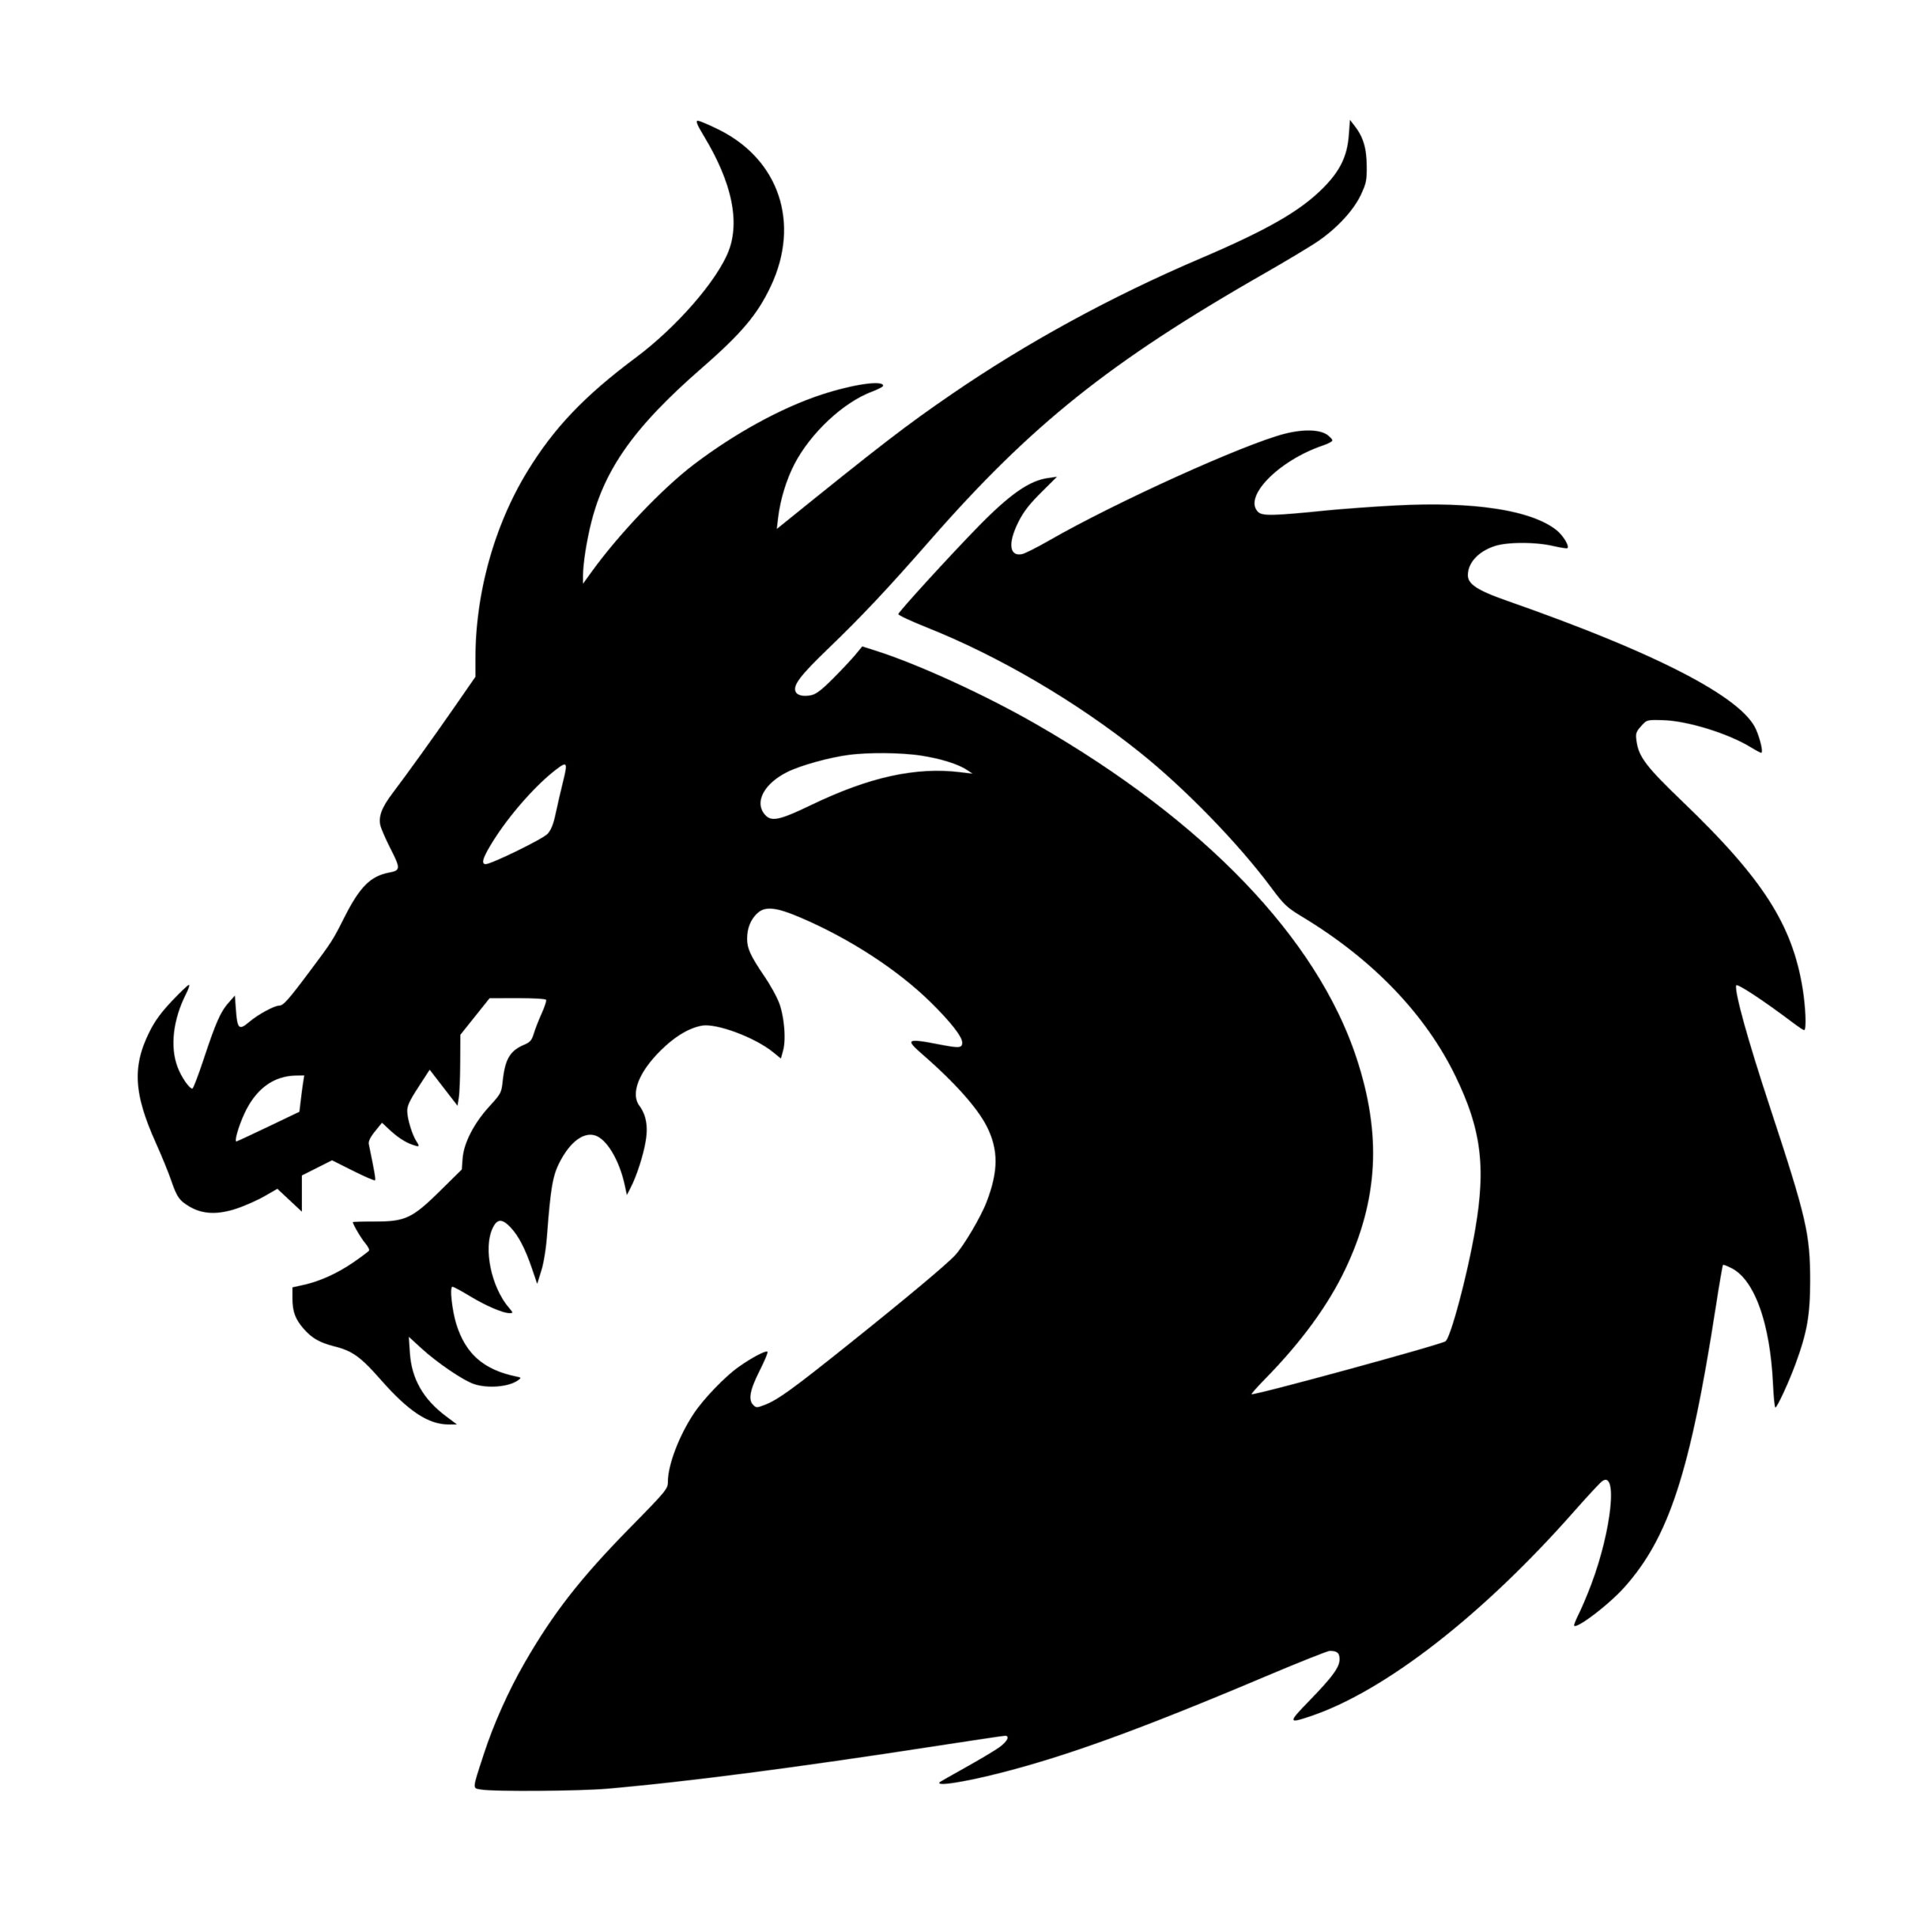 Dragon Warrior SVG File for Cricut, Silhouette, Laser, & More